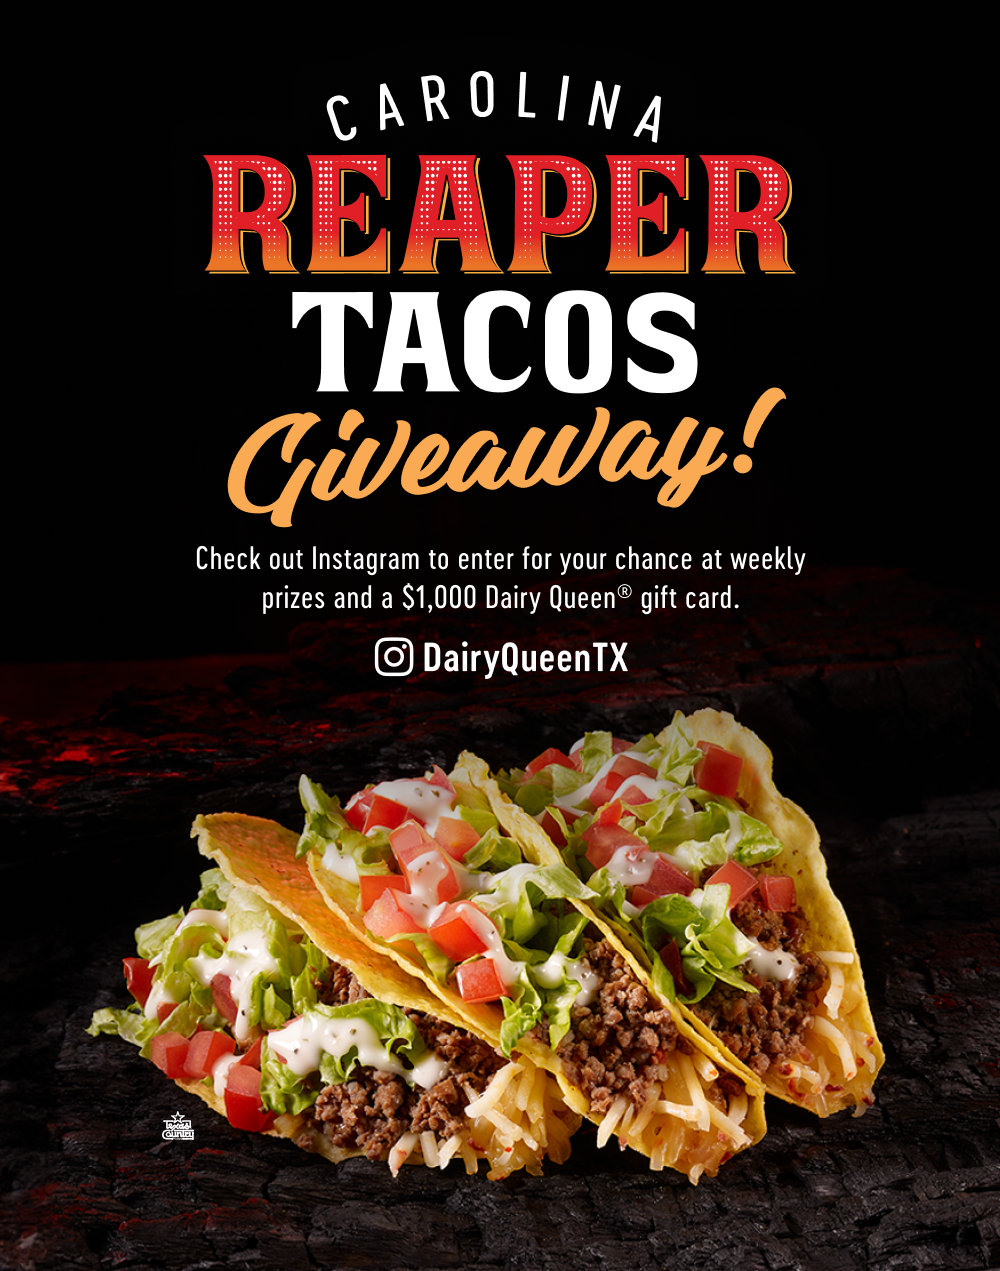 Carolina Reaper Tacos Giveaway